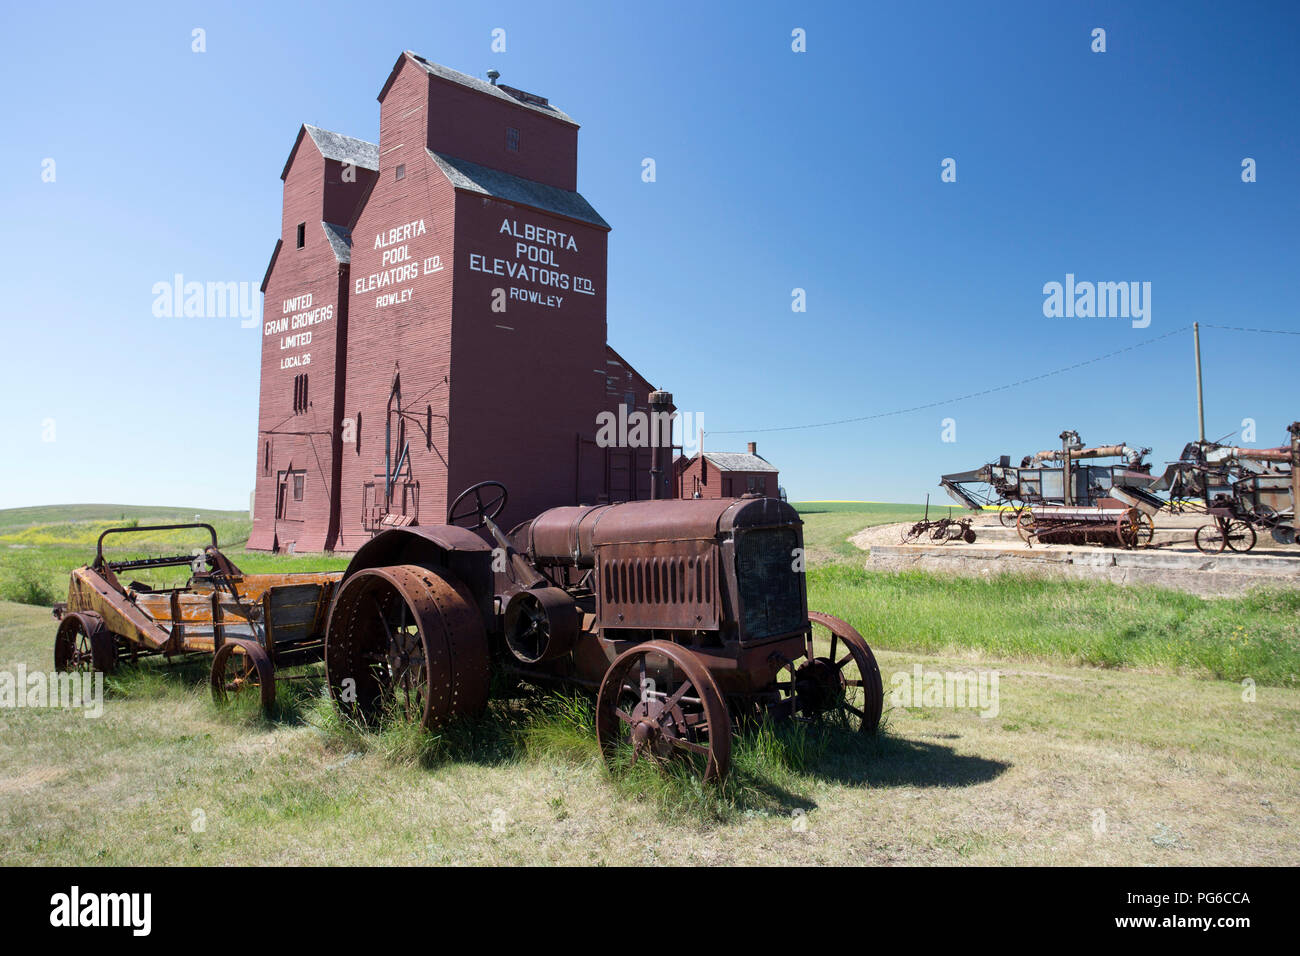 Juli 13, 2018 - Rowley, Alberta, Kanada: altes verwittertes Holz Getreidesilos in der kleinen kanadischen Prairie Stadt Rowley, Alberta, Kanada. Stockfoto